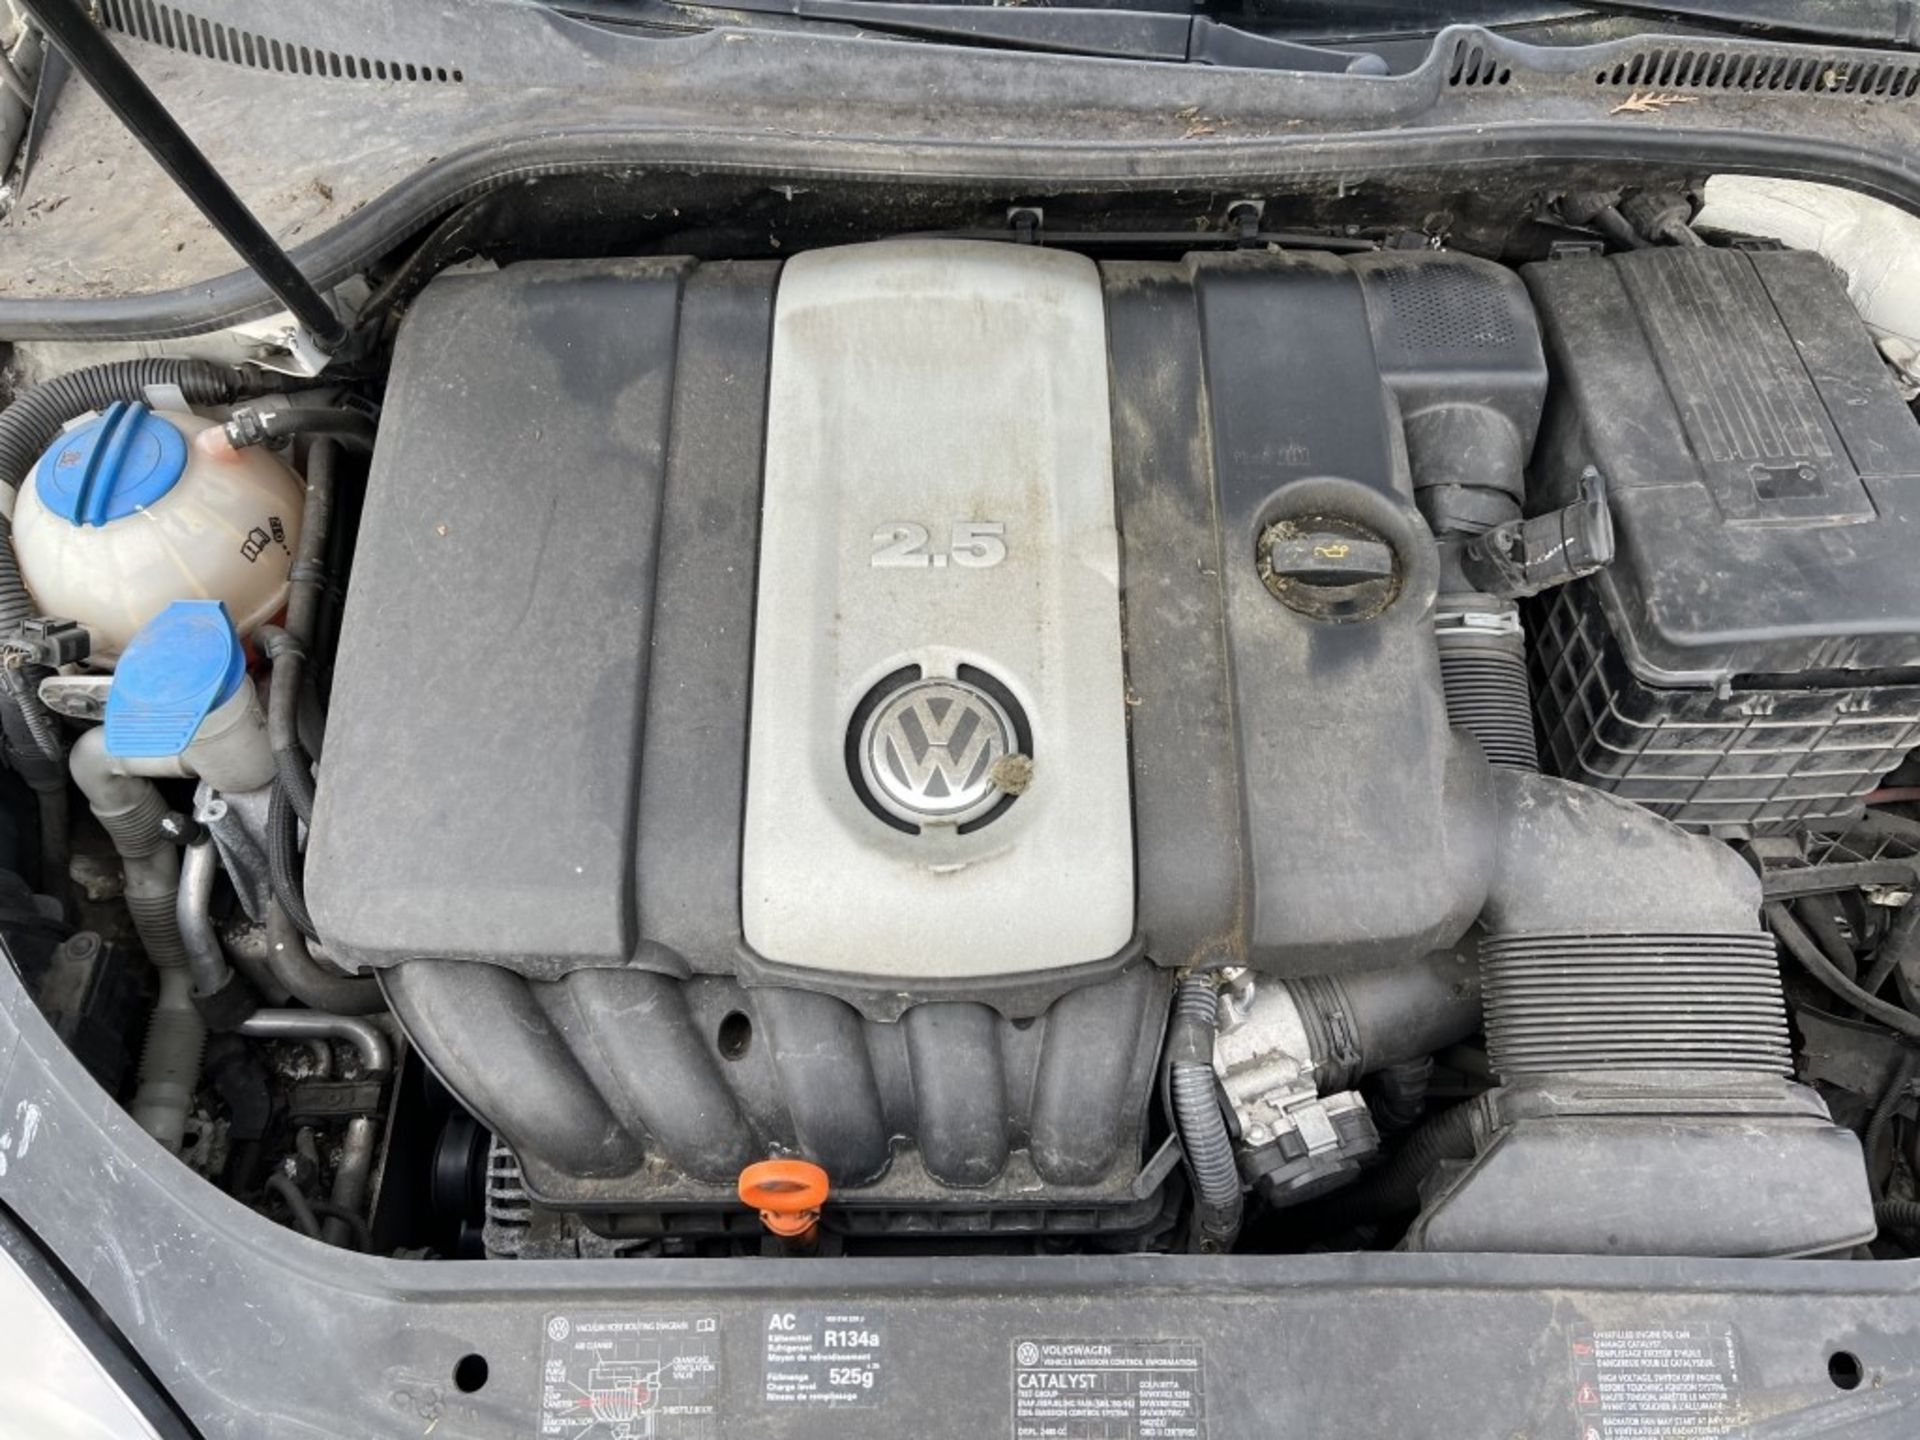 2005 Volkswagen Jetta Sedan - Image 15 of 38